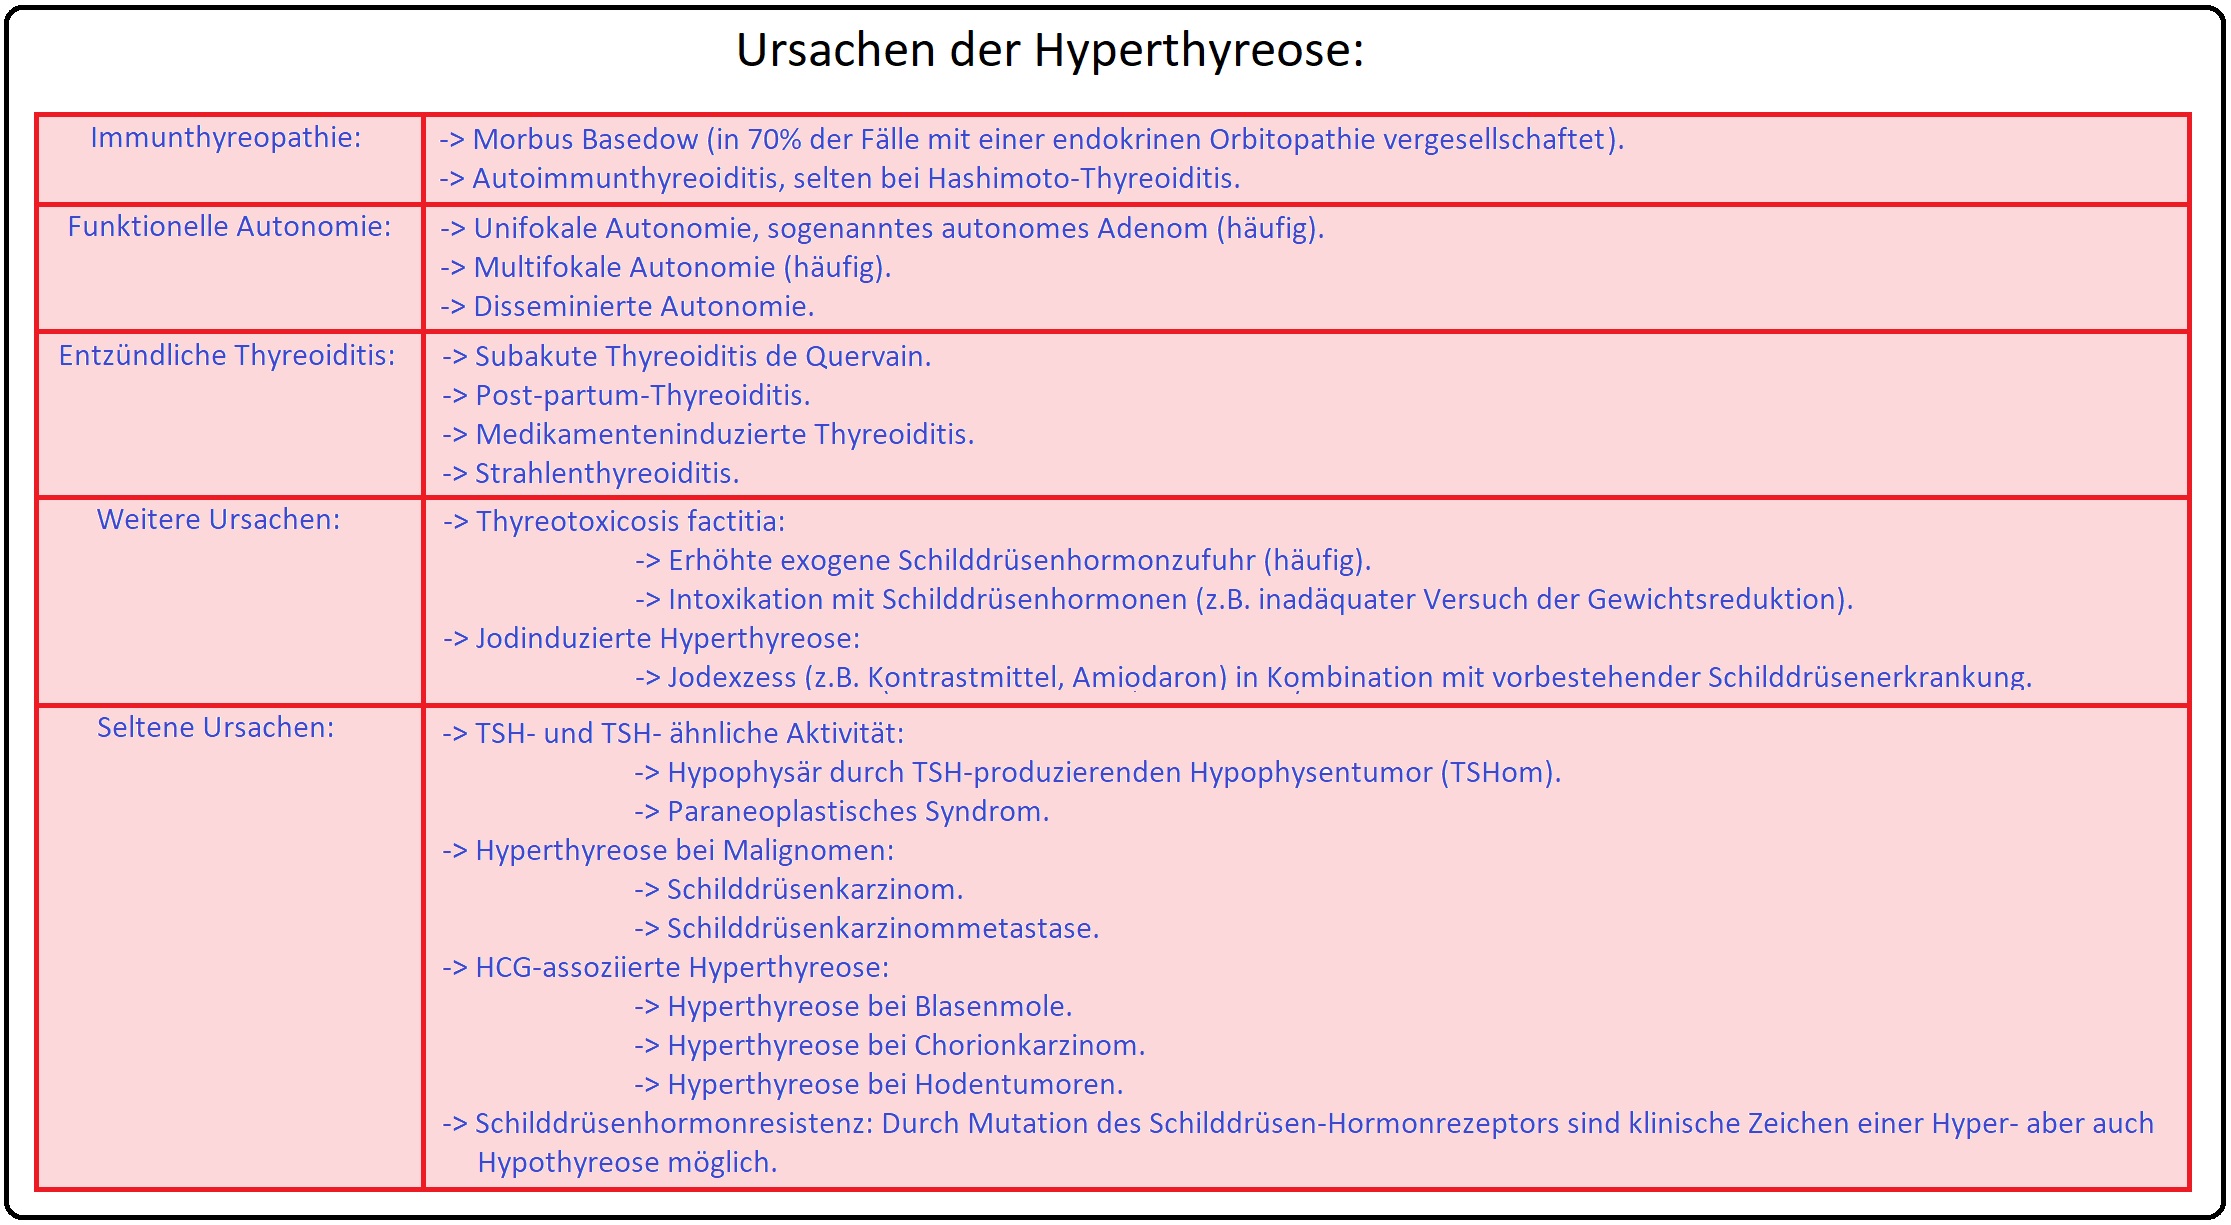 740 Ursachen der Hyperthyreose